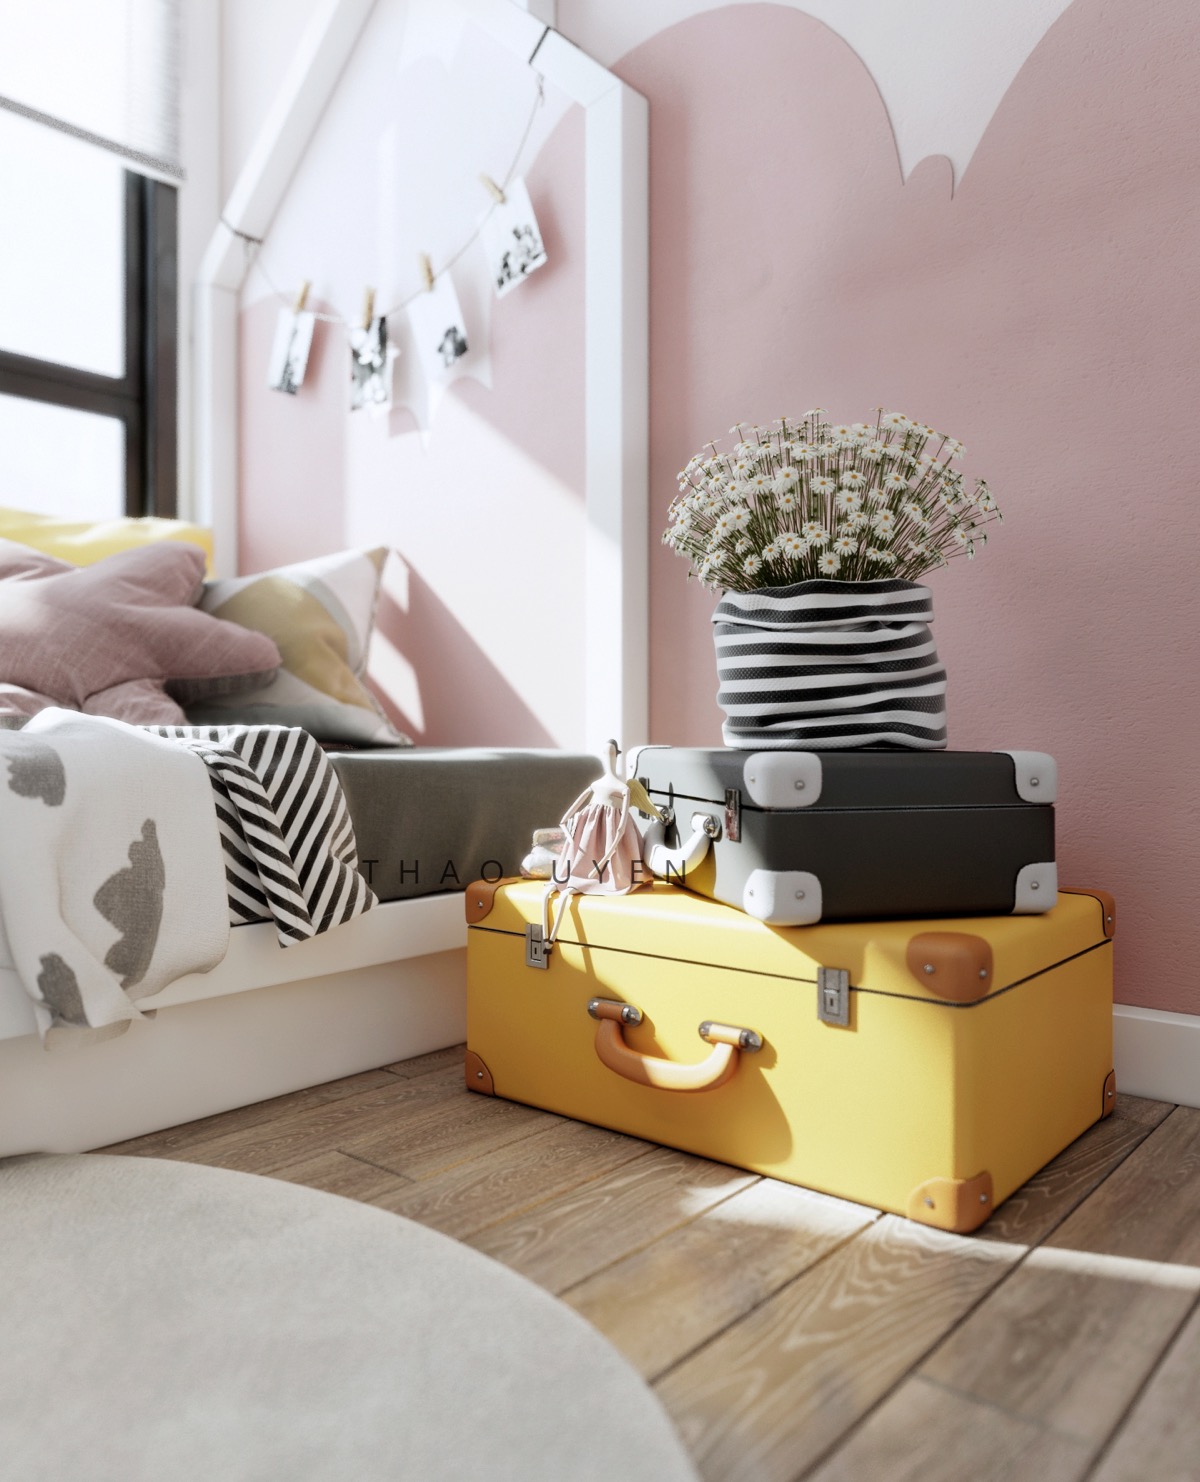 Hình ảnh một góc phòng ngủ cực nổi bật với vali màu đen xếp chồng vali màu vàng, phía trên đặt bình cúc họa mi màu trắng.